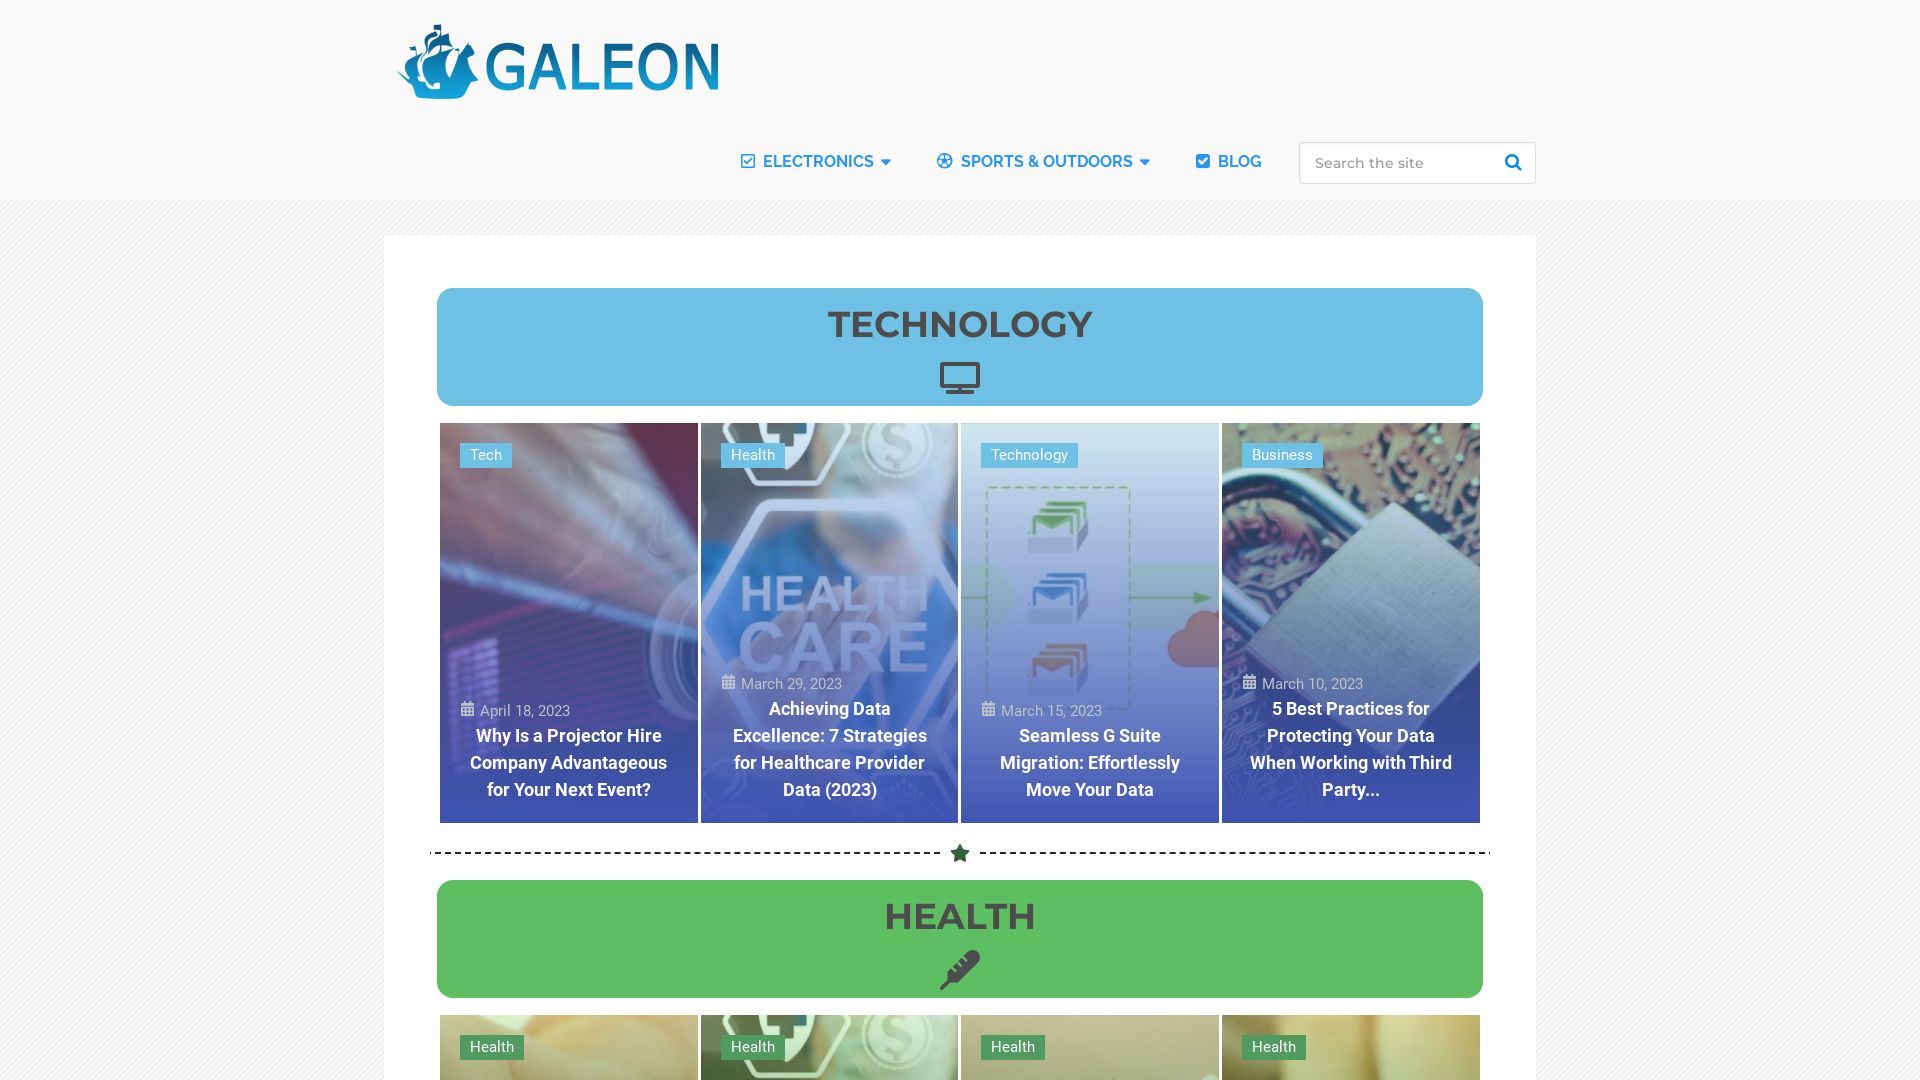 网站状态 galeon.com 是  在线的